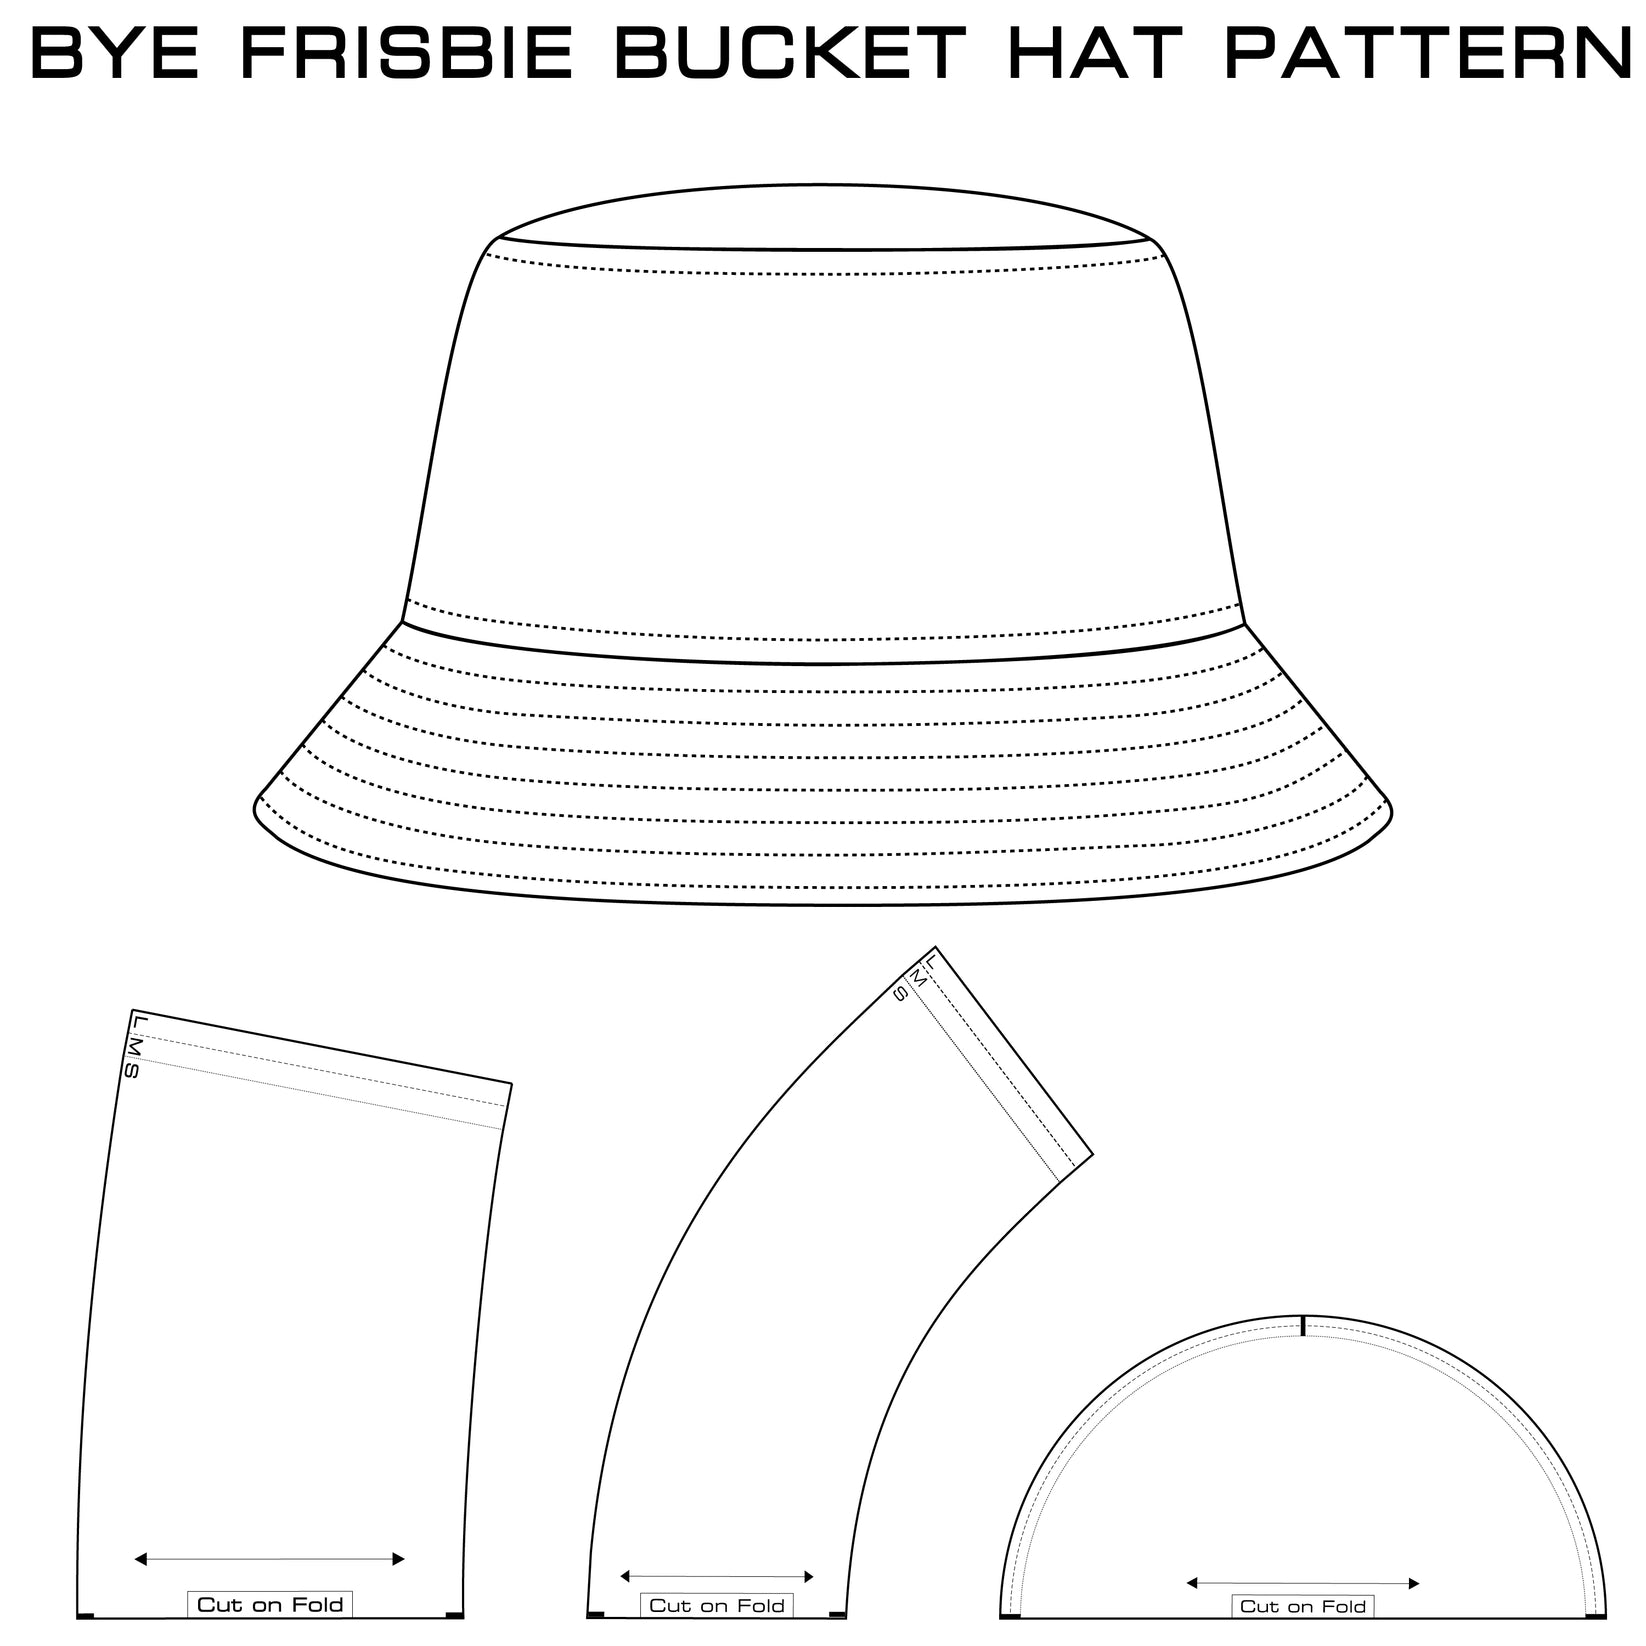 Bucket Hat Pattern – Bye Frisbie